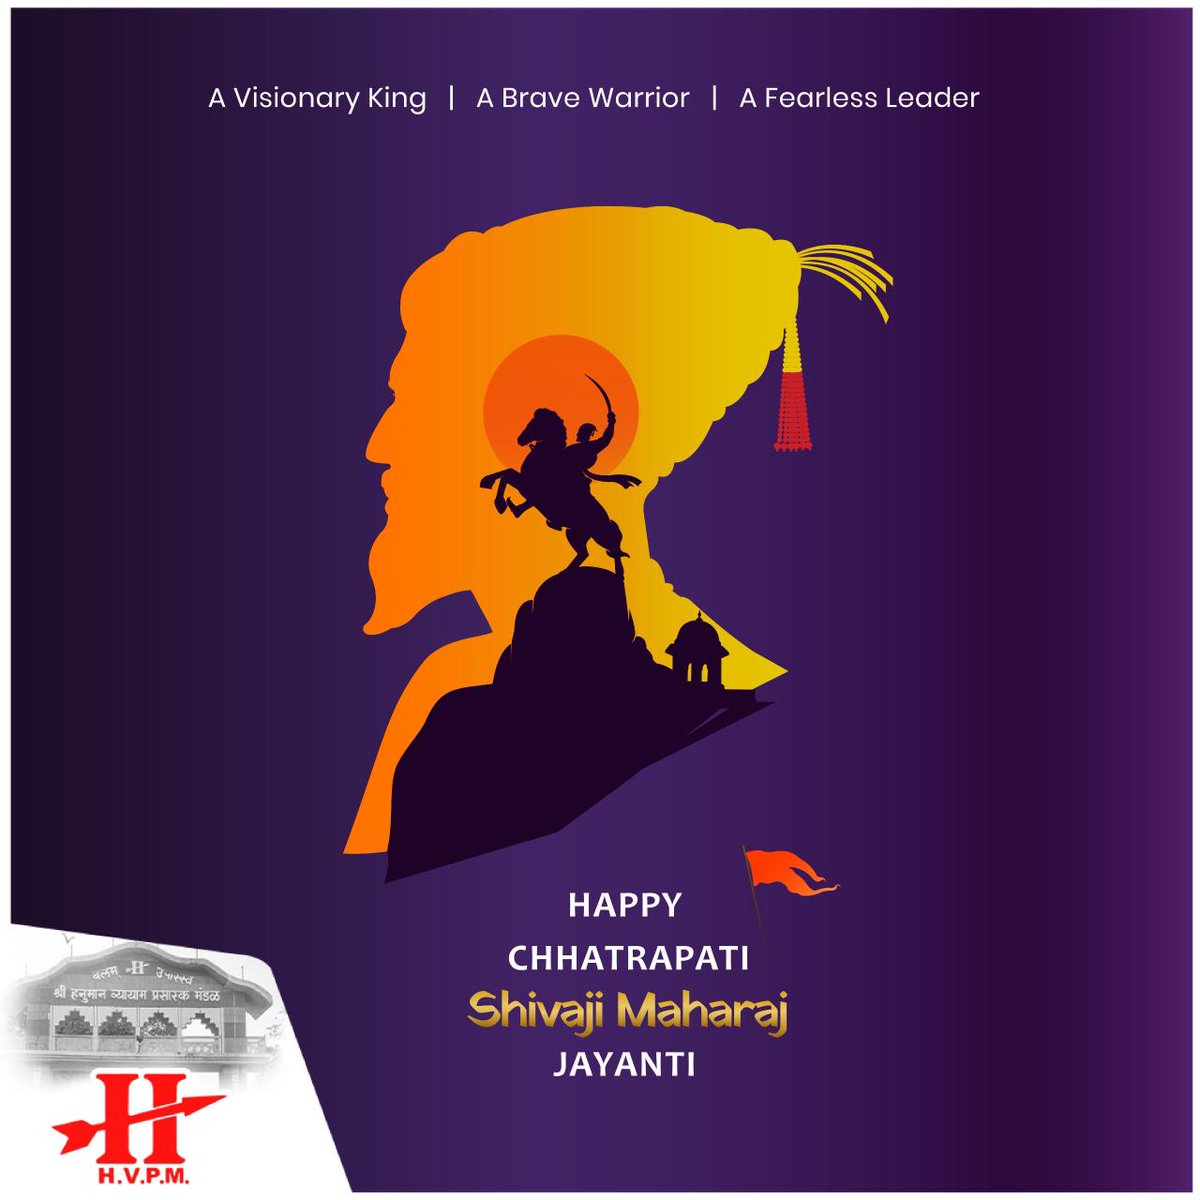 एक होतं गाव महाराष्ट्र त्याचं नाव आणि स्वराज्य ज्यांनी घडवलं शिवराय त्यांचे नाव राजांना त्रिवार मानाचा मुजरा जय जिजाऊ, जय शिवराय..! Let's commemorate the legacy of a true warrior king whose indomitable spirit shaped the course of history. #ChhatrapatiShivajiMaharaj